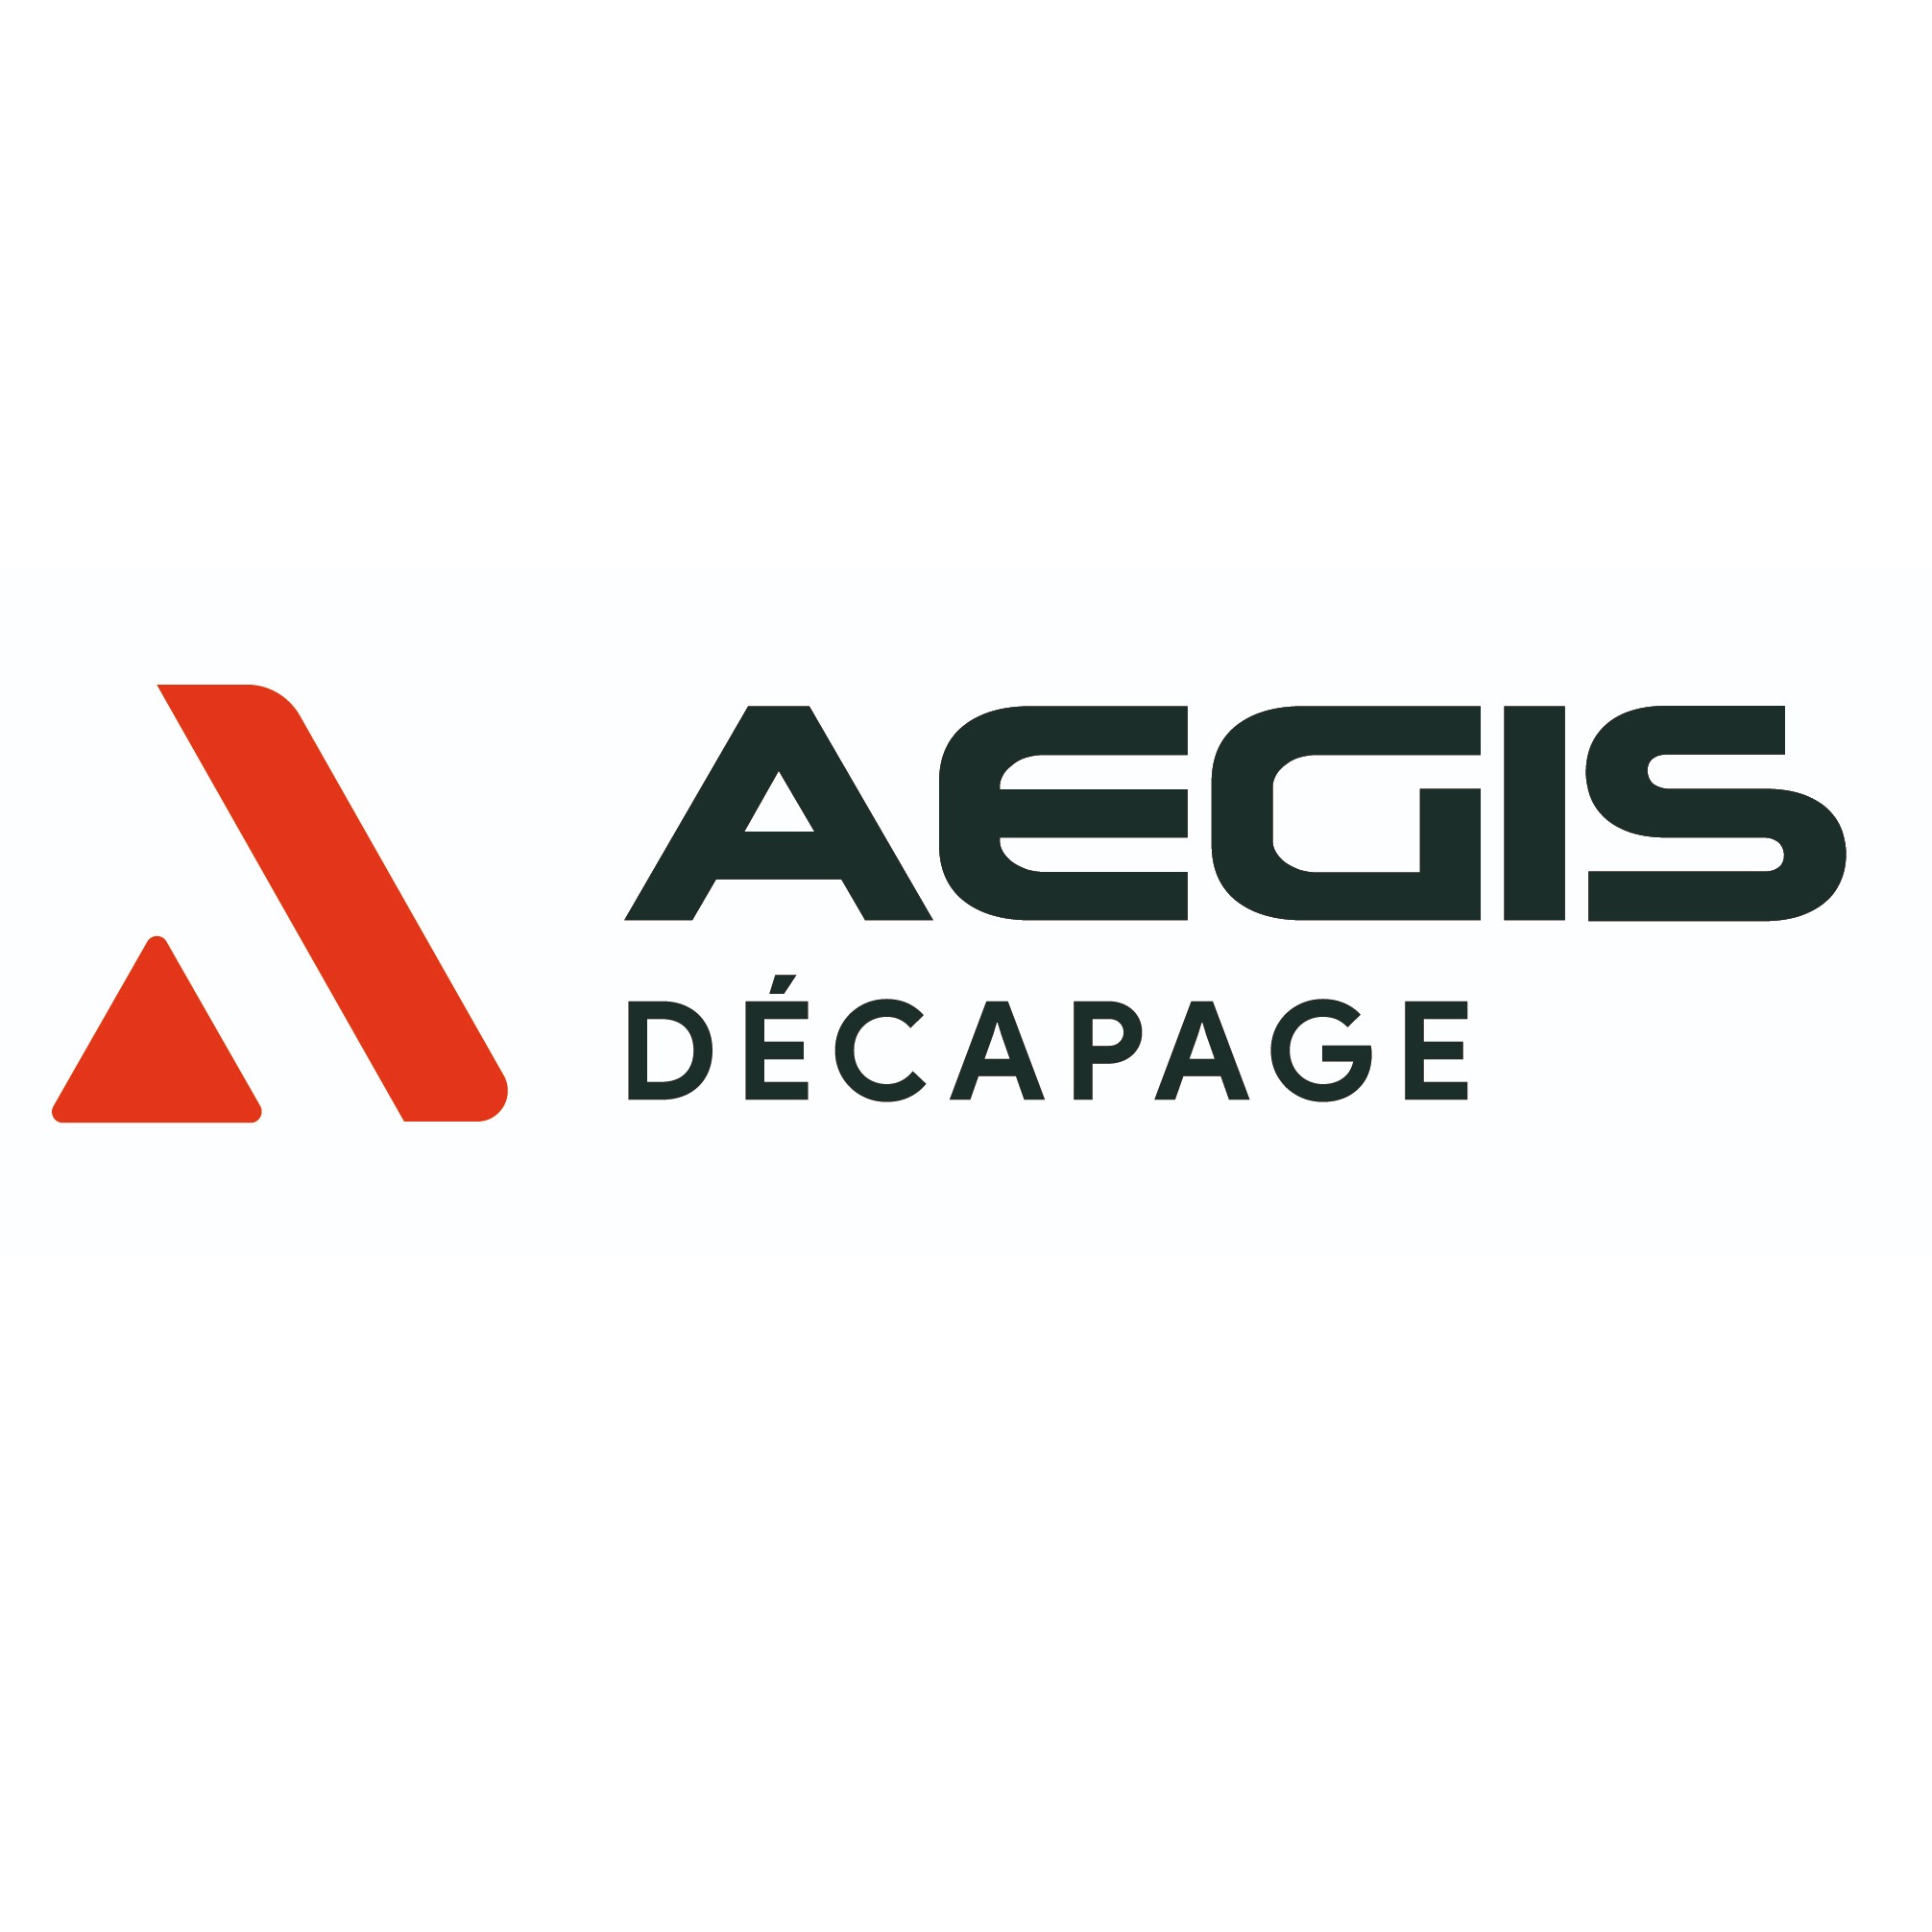 AEGIS DECAPAGE